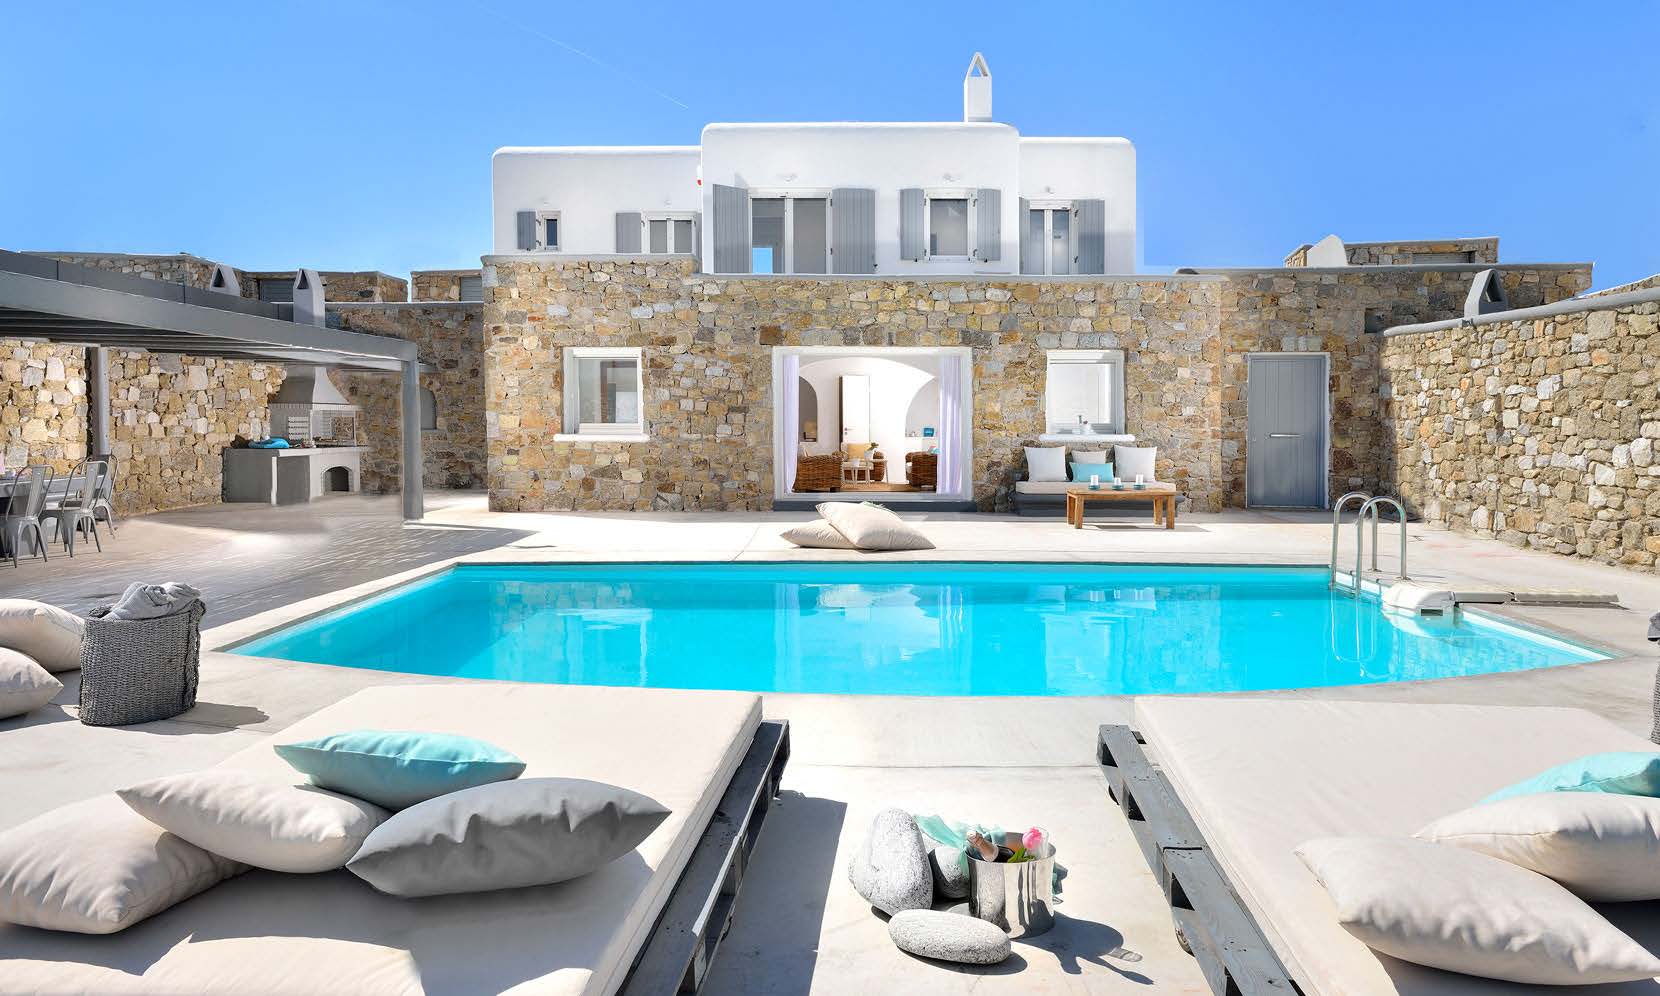 Villa Mocoud with its outdoor pool